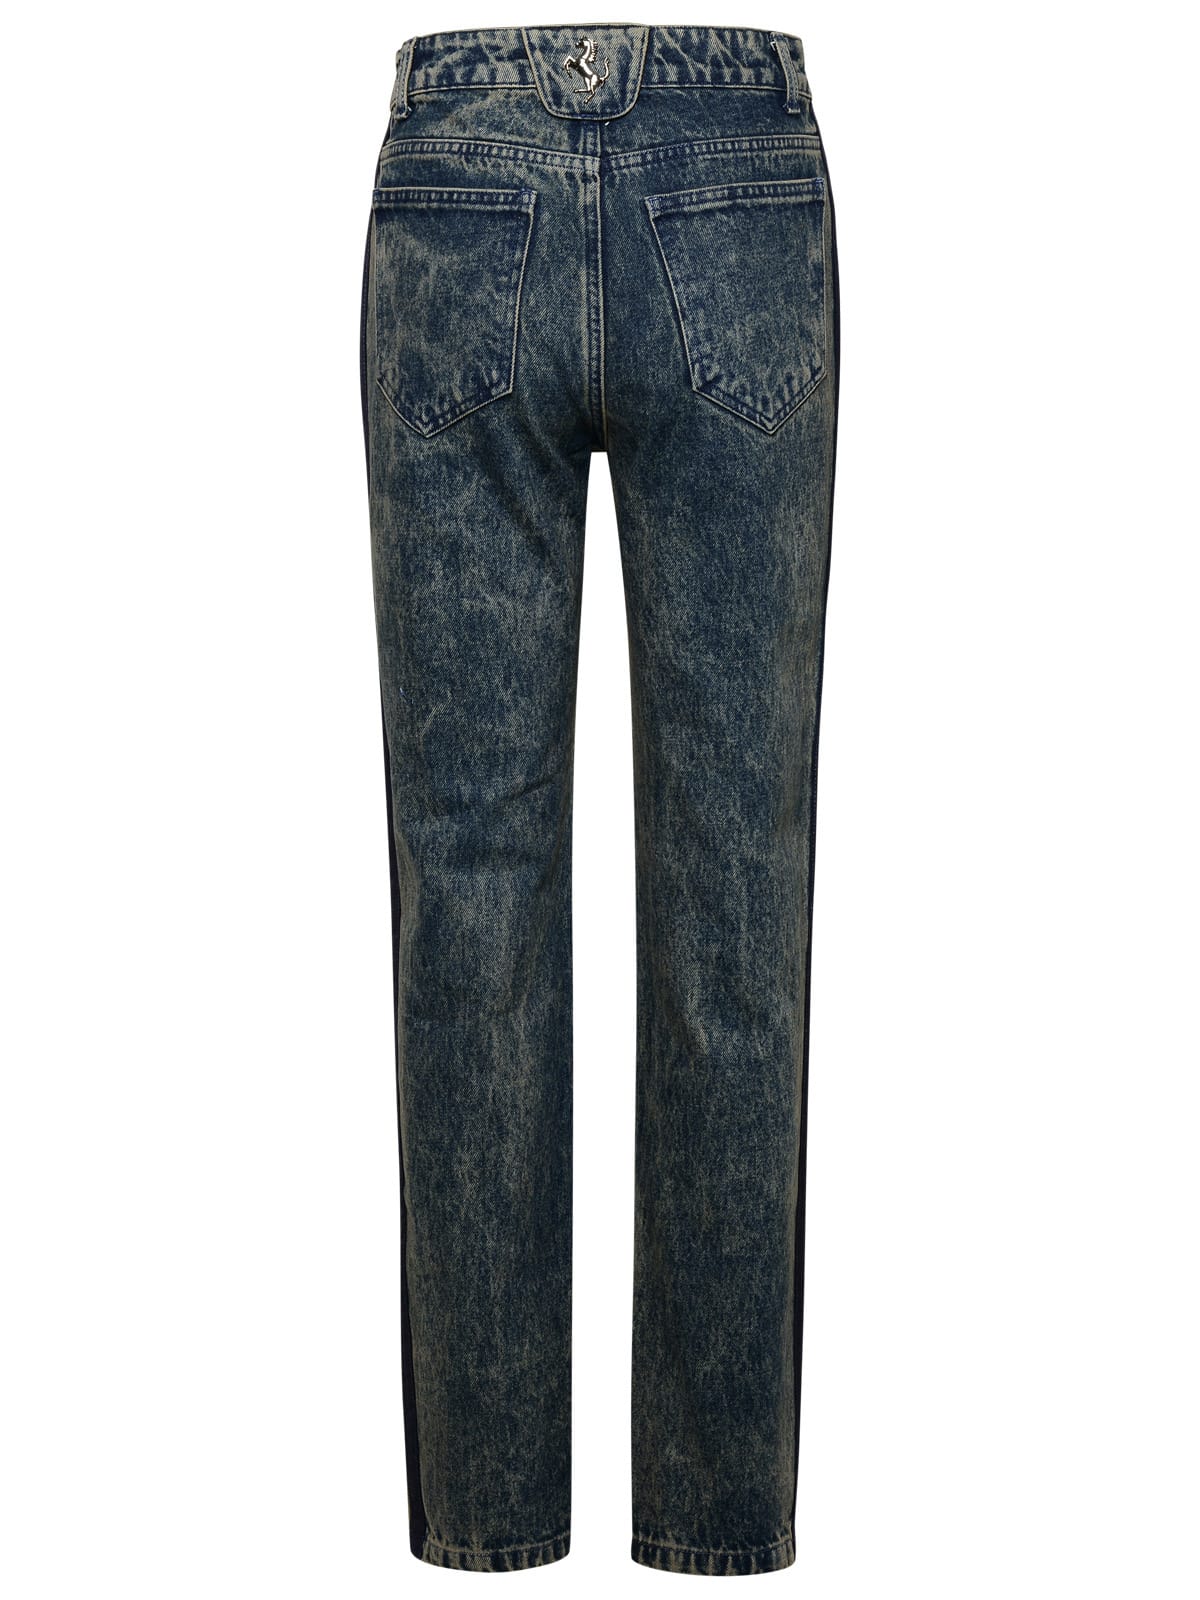 Shop Ferrari Blue Cotton Jeans